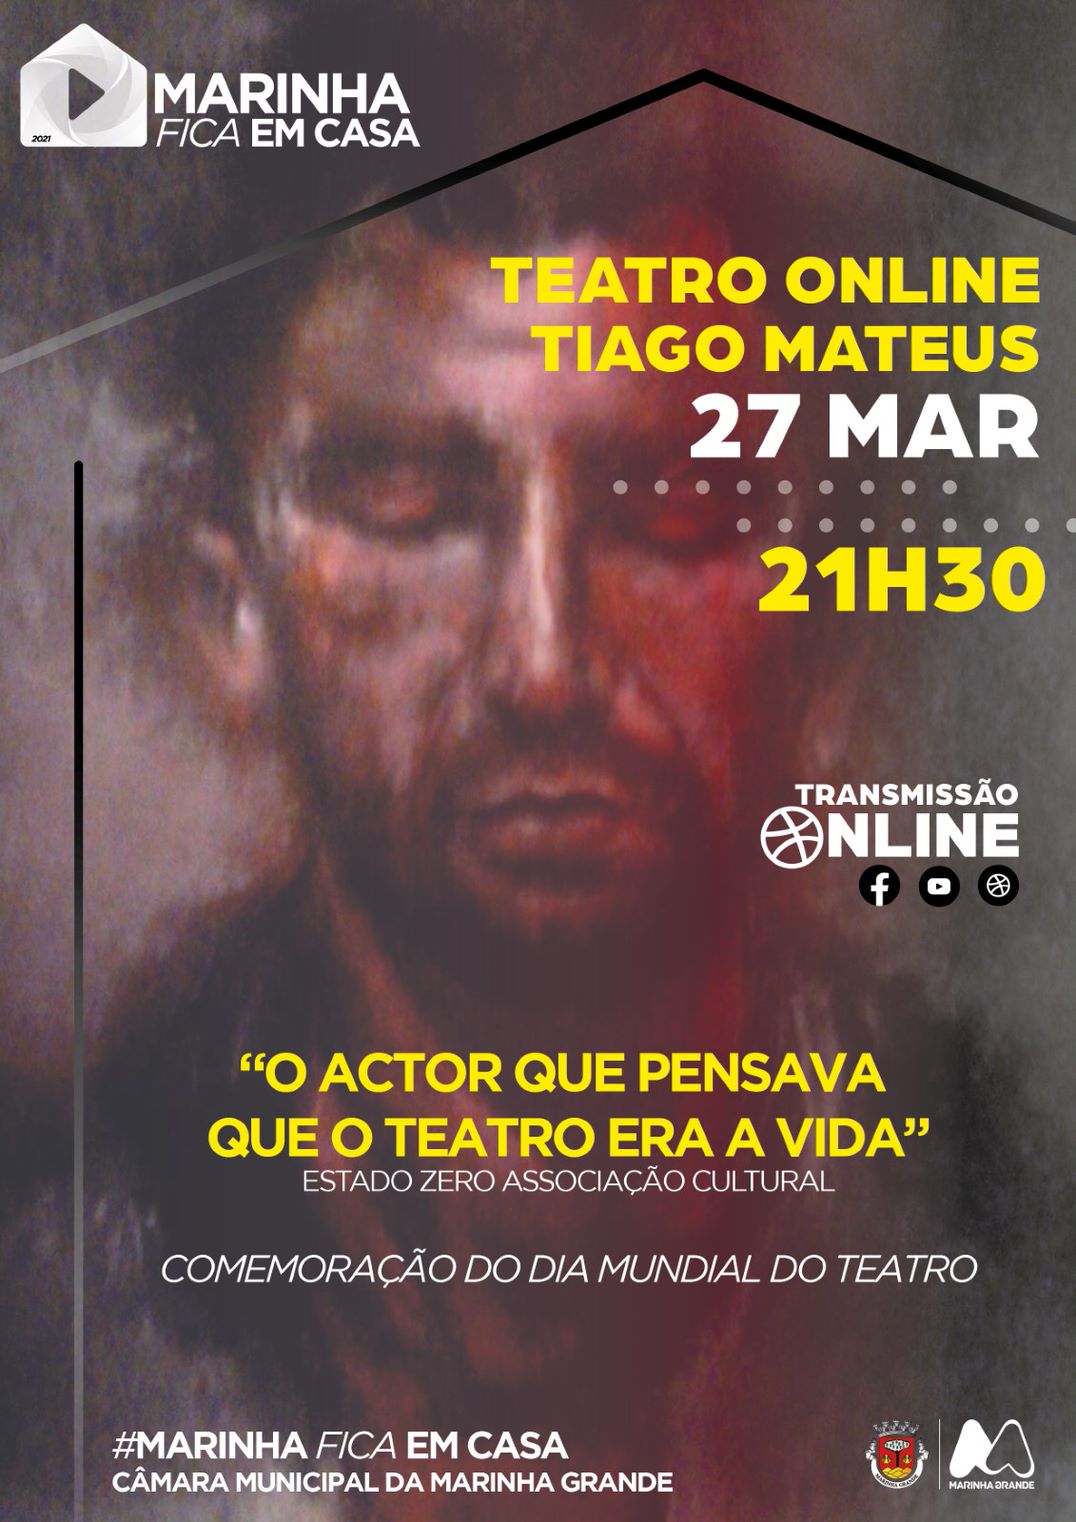 Teatro online . “O Actor que pensava que o teatro era a vida” . #marinhaficaemcasa